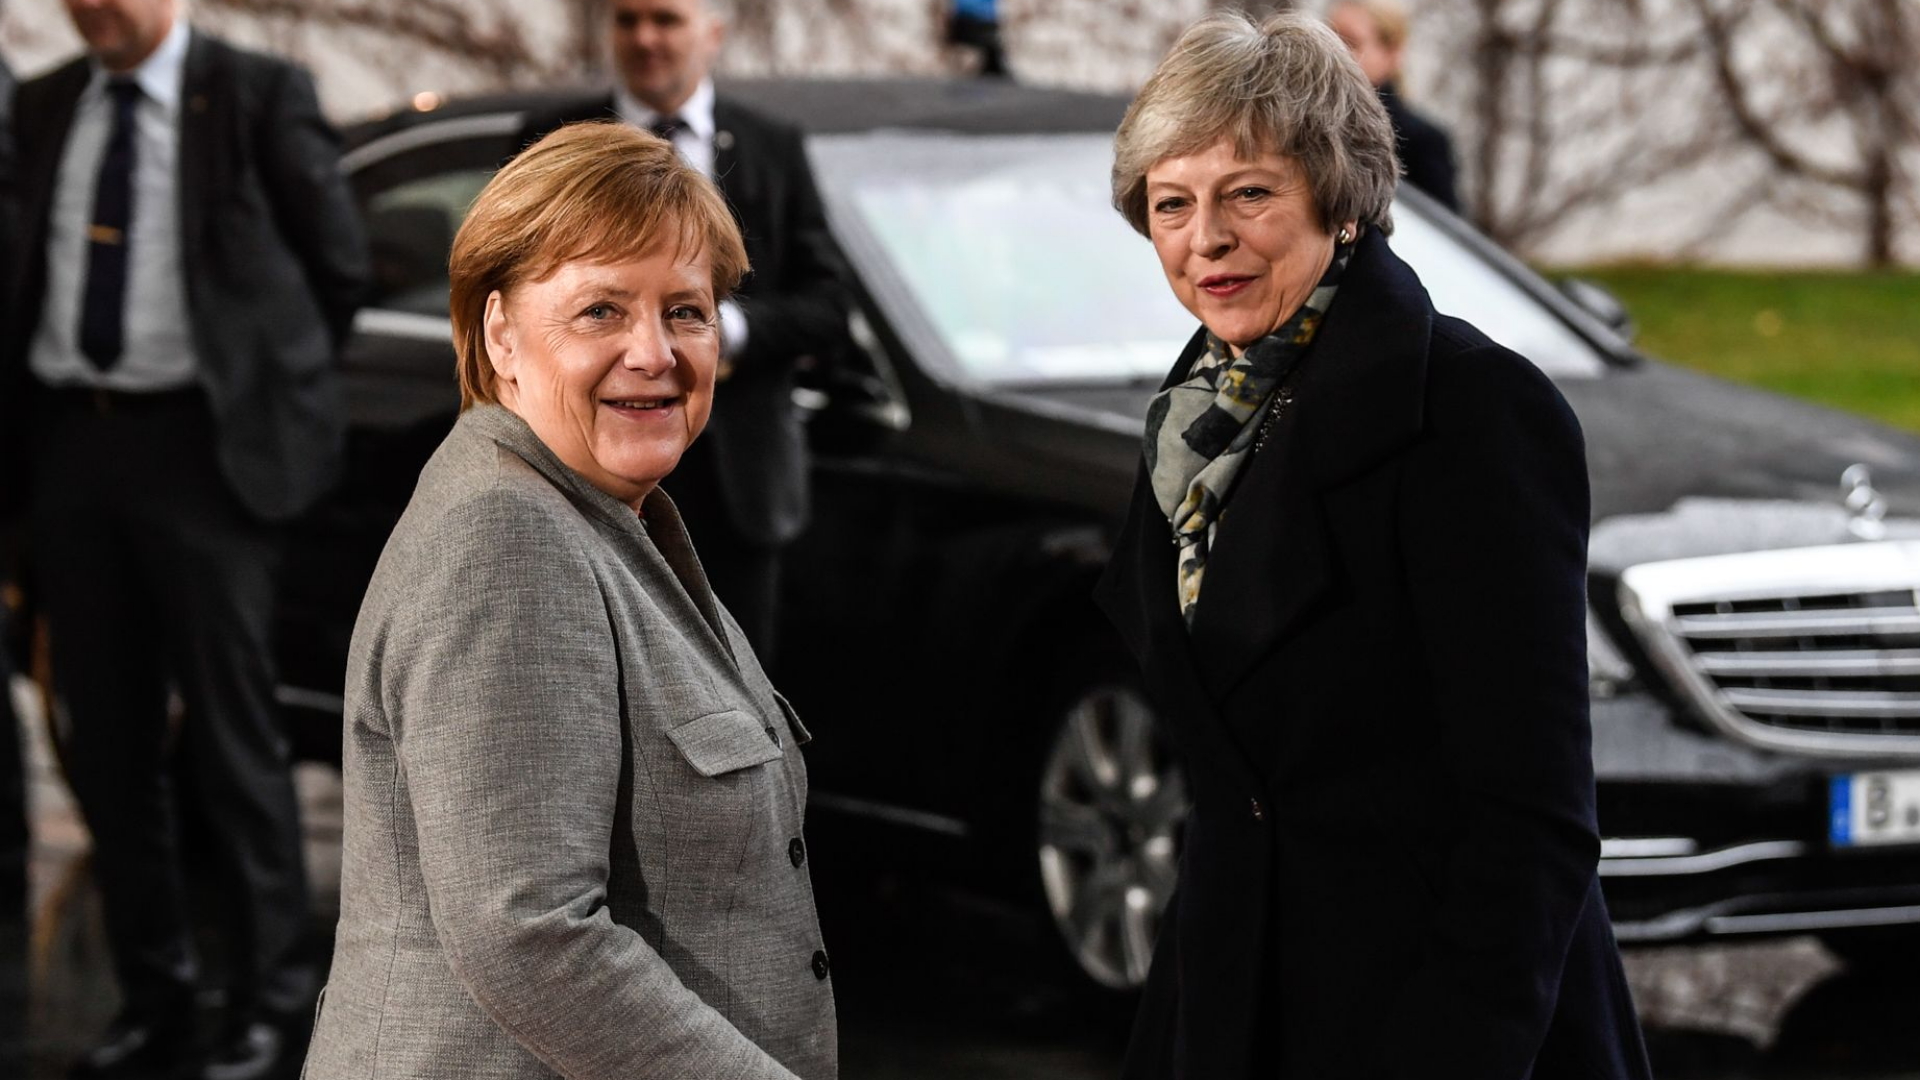 Kanzlerin Angela Merkel nach dem Gespräch mit Großbritanniens Premierministerin May | Bildquelle: FILIP SINGER/EPA-EFE/REX